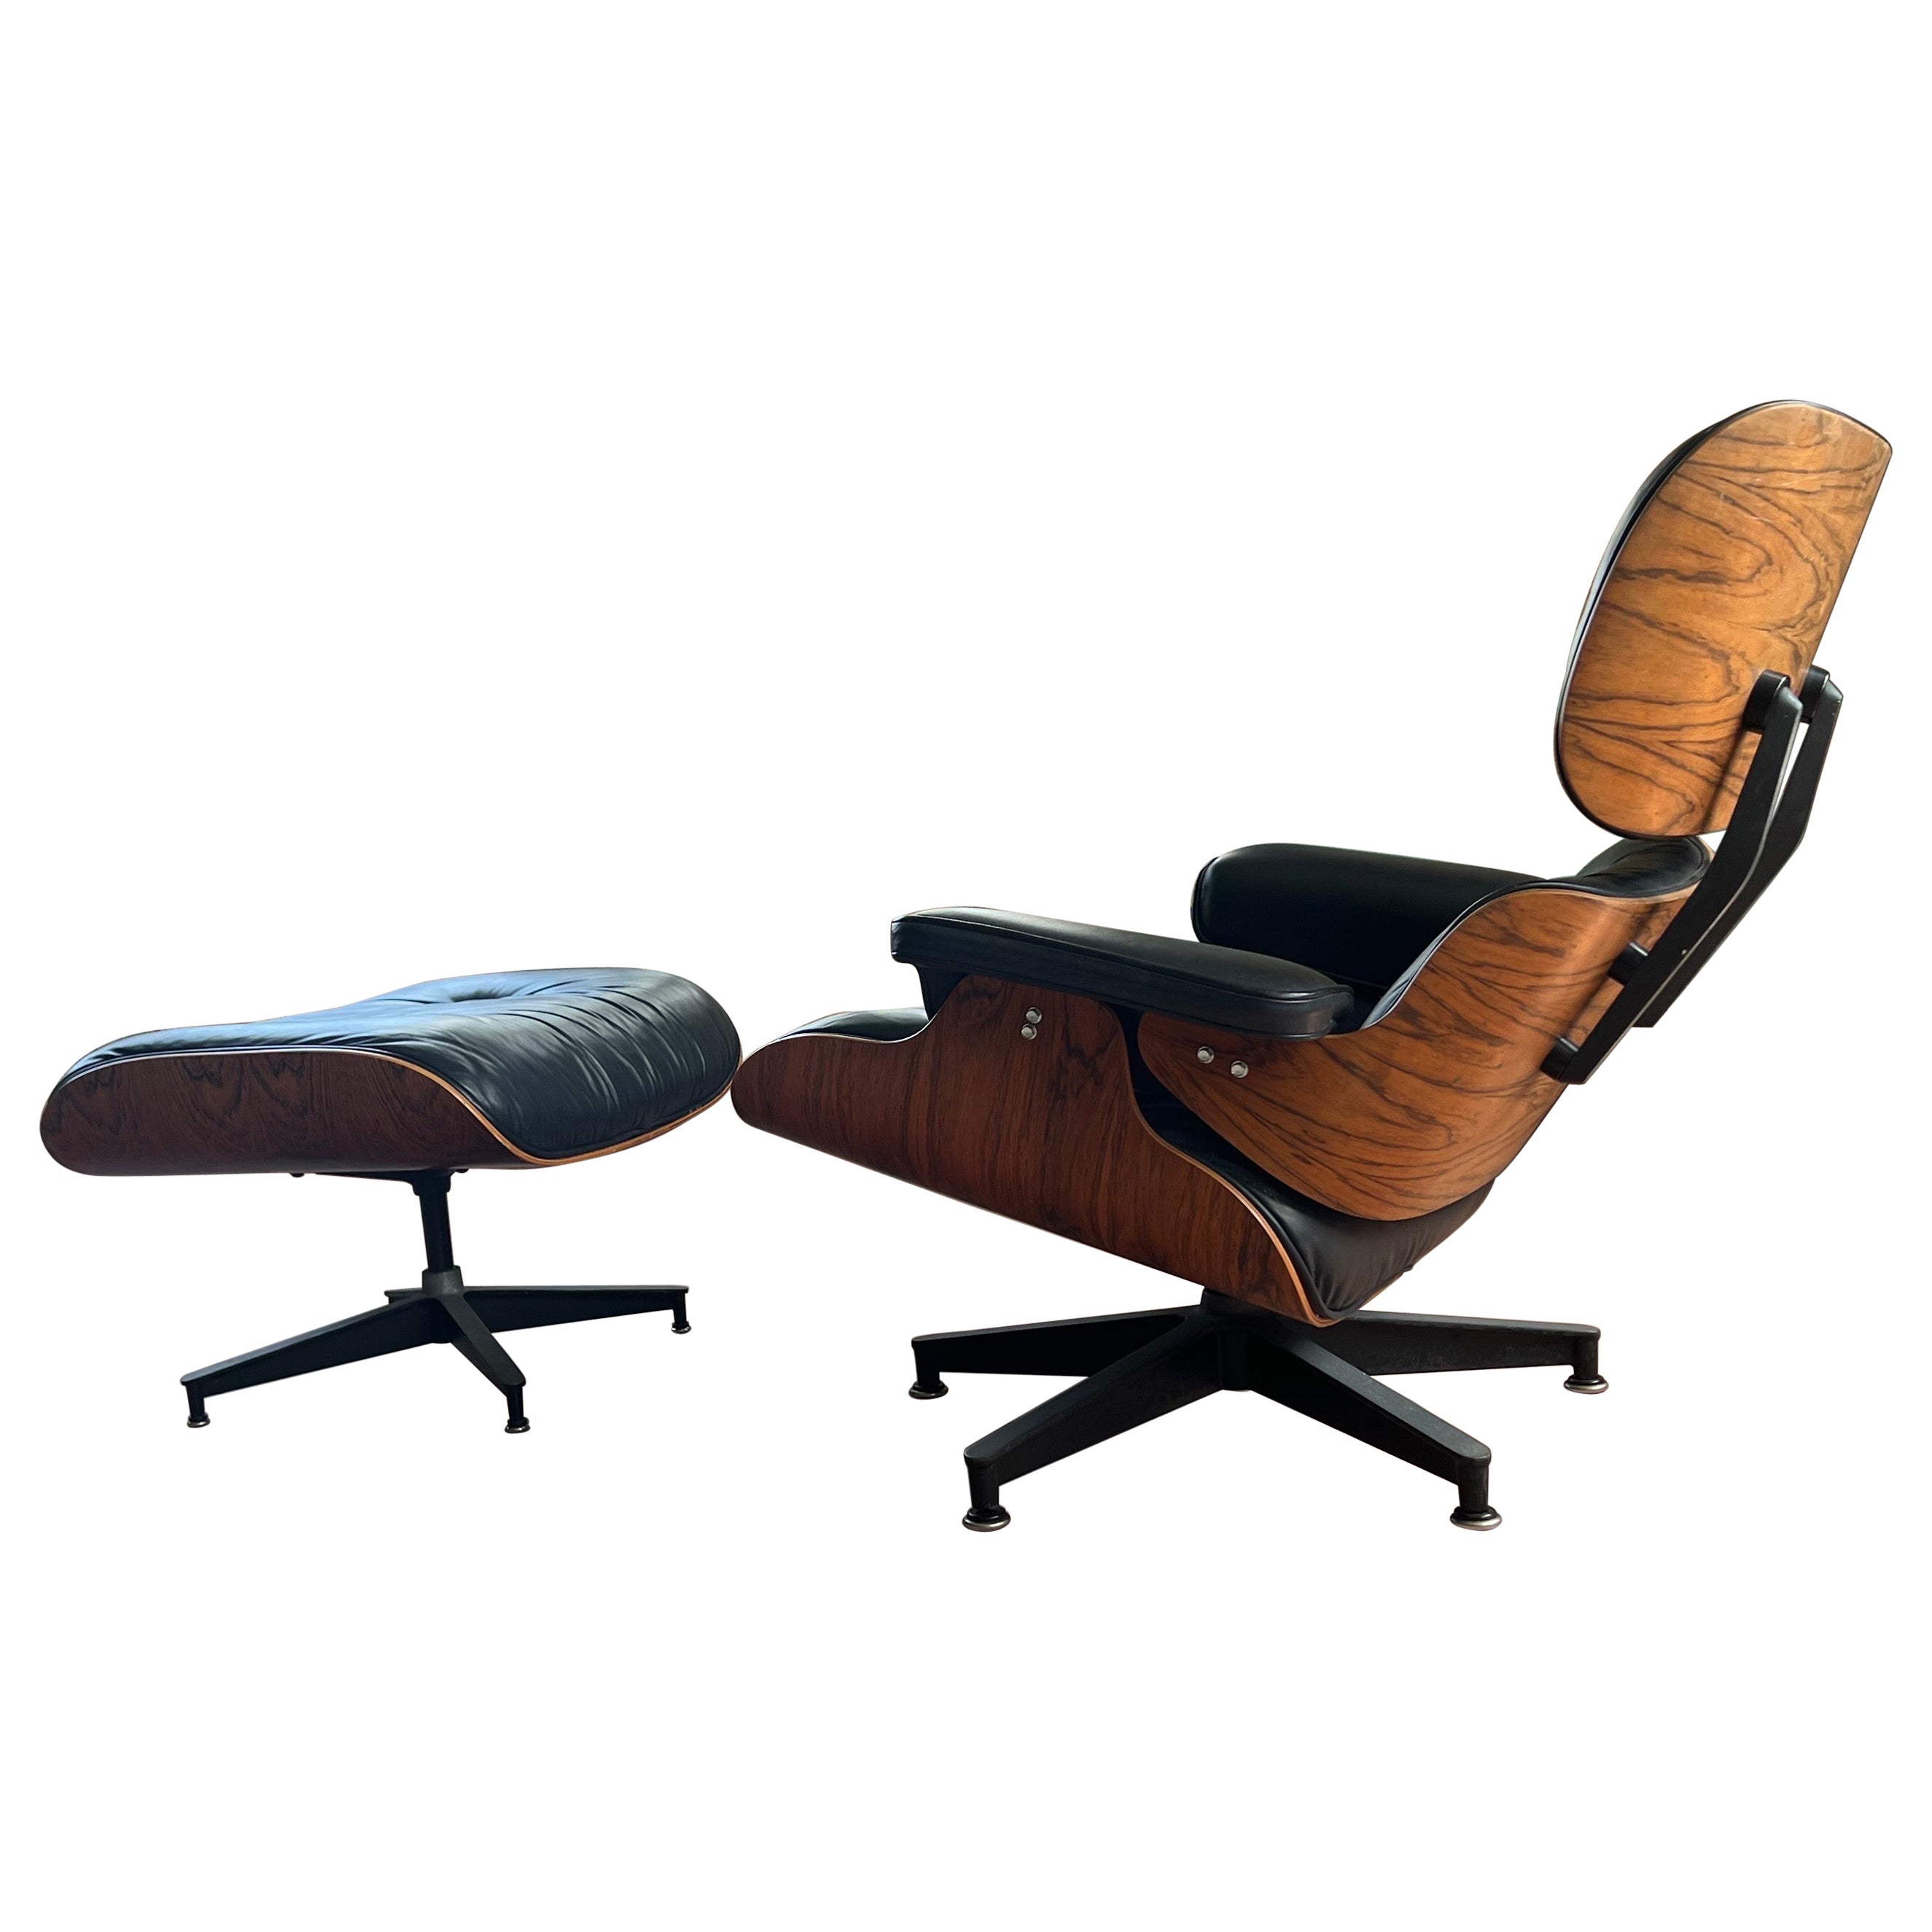 Chaise longue et pouf Eames Herman Miller d'époque